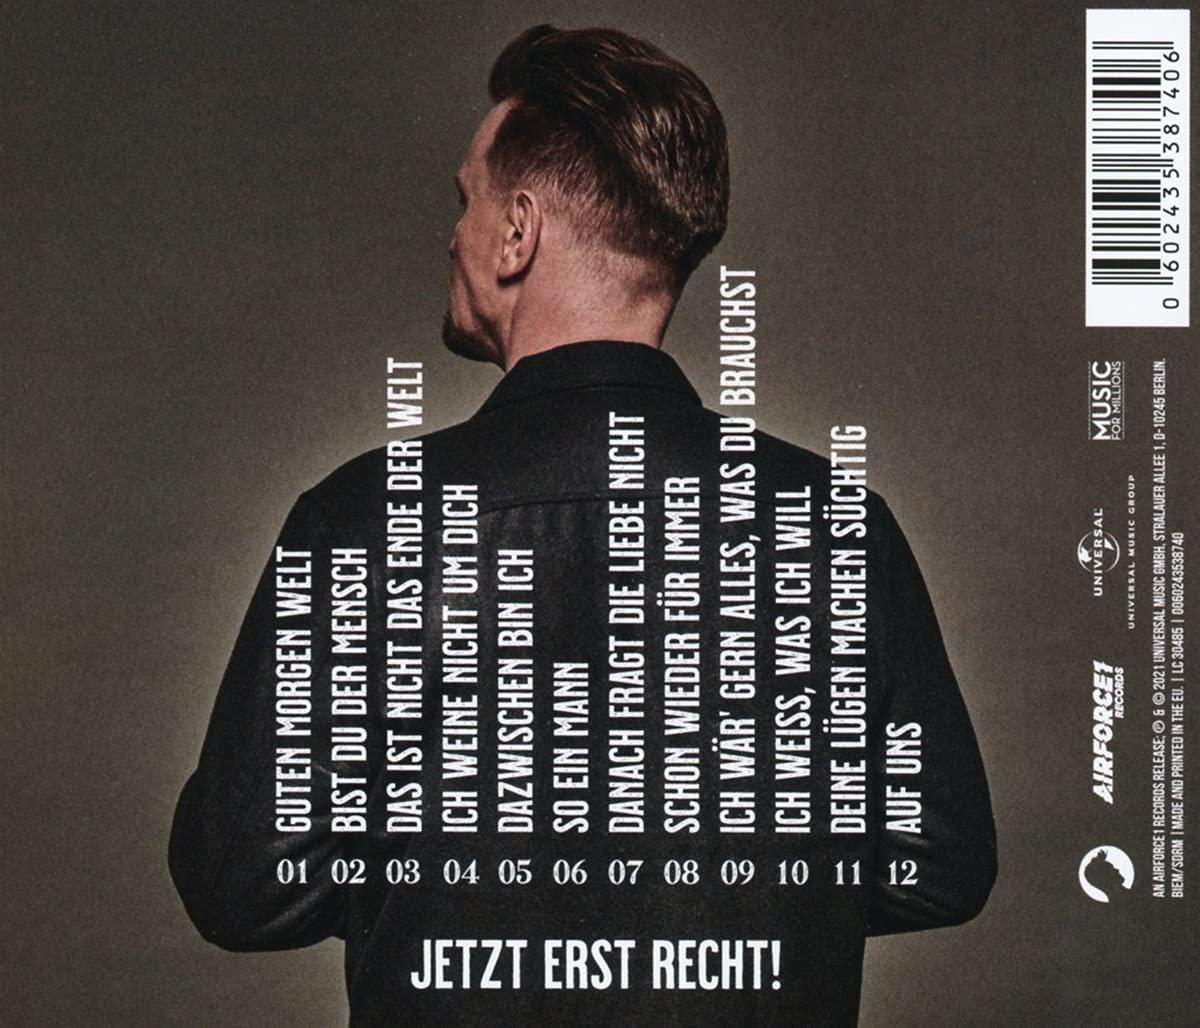 Jetzt - Zucker (CD) Erst - Recht! Ben